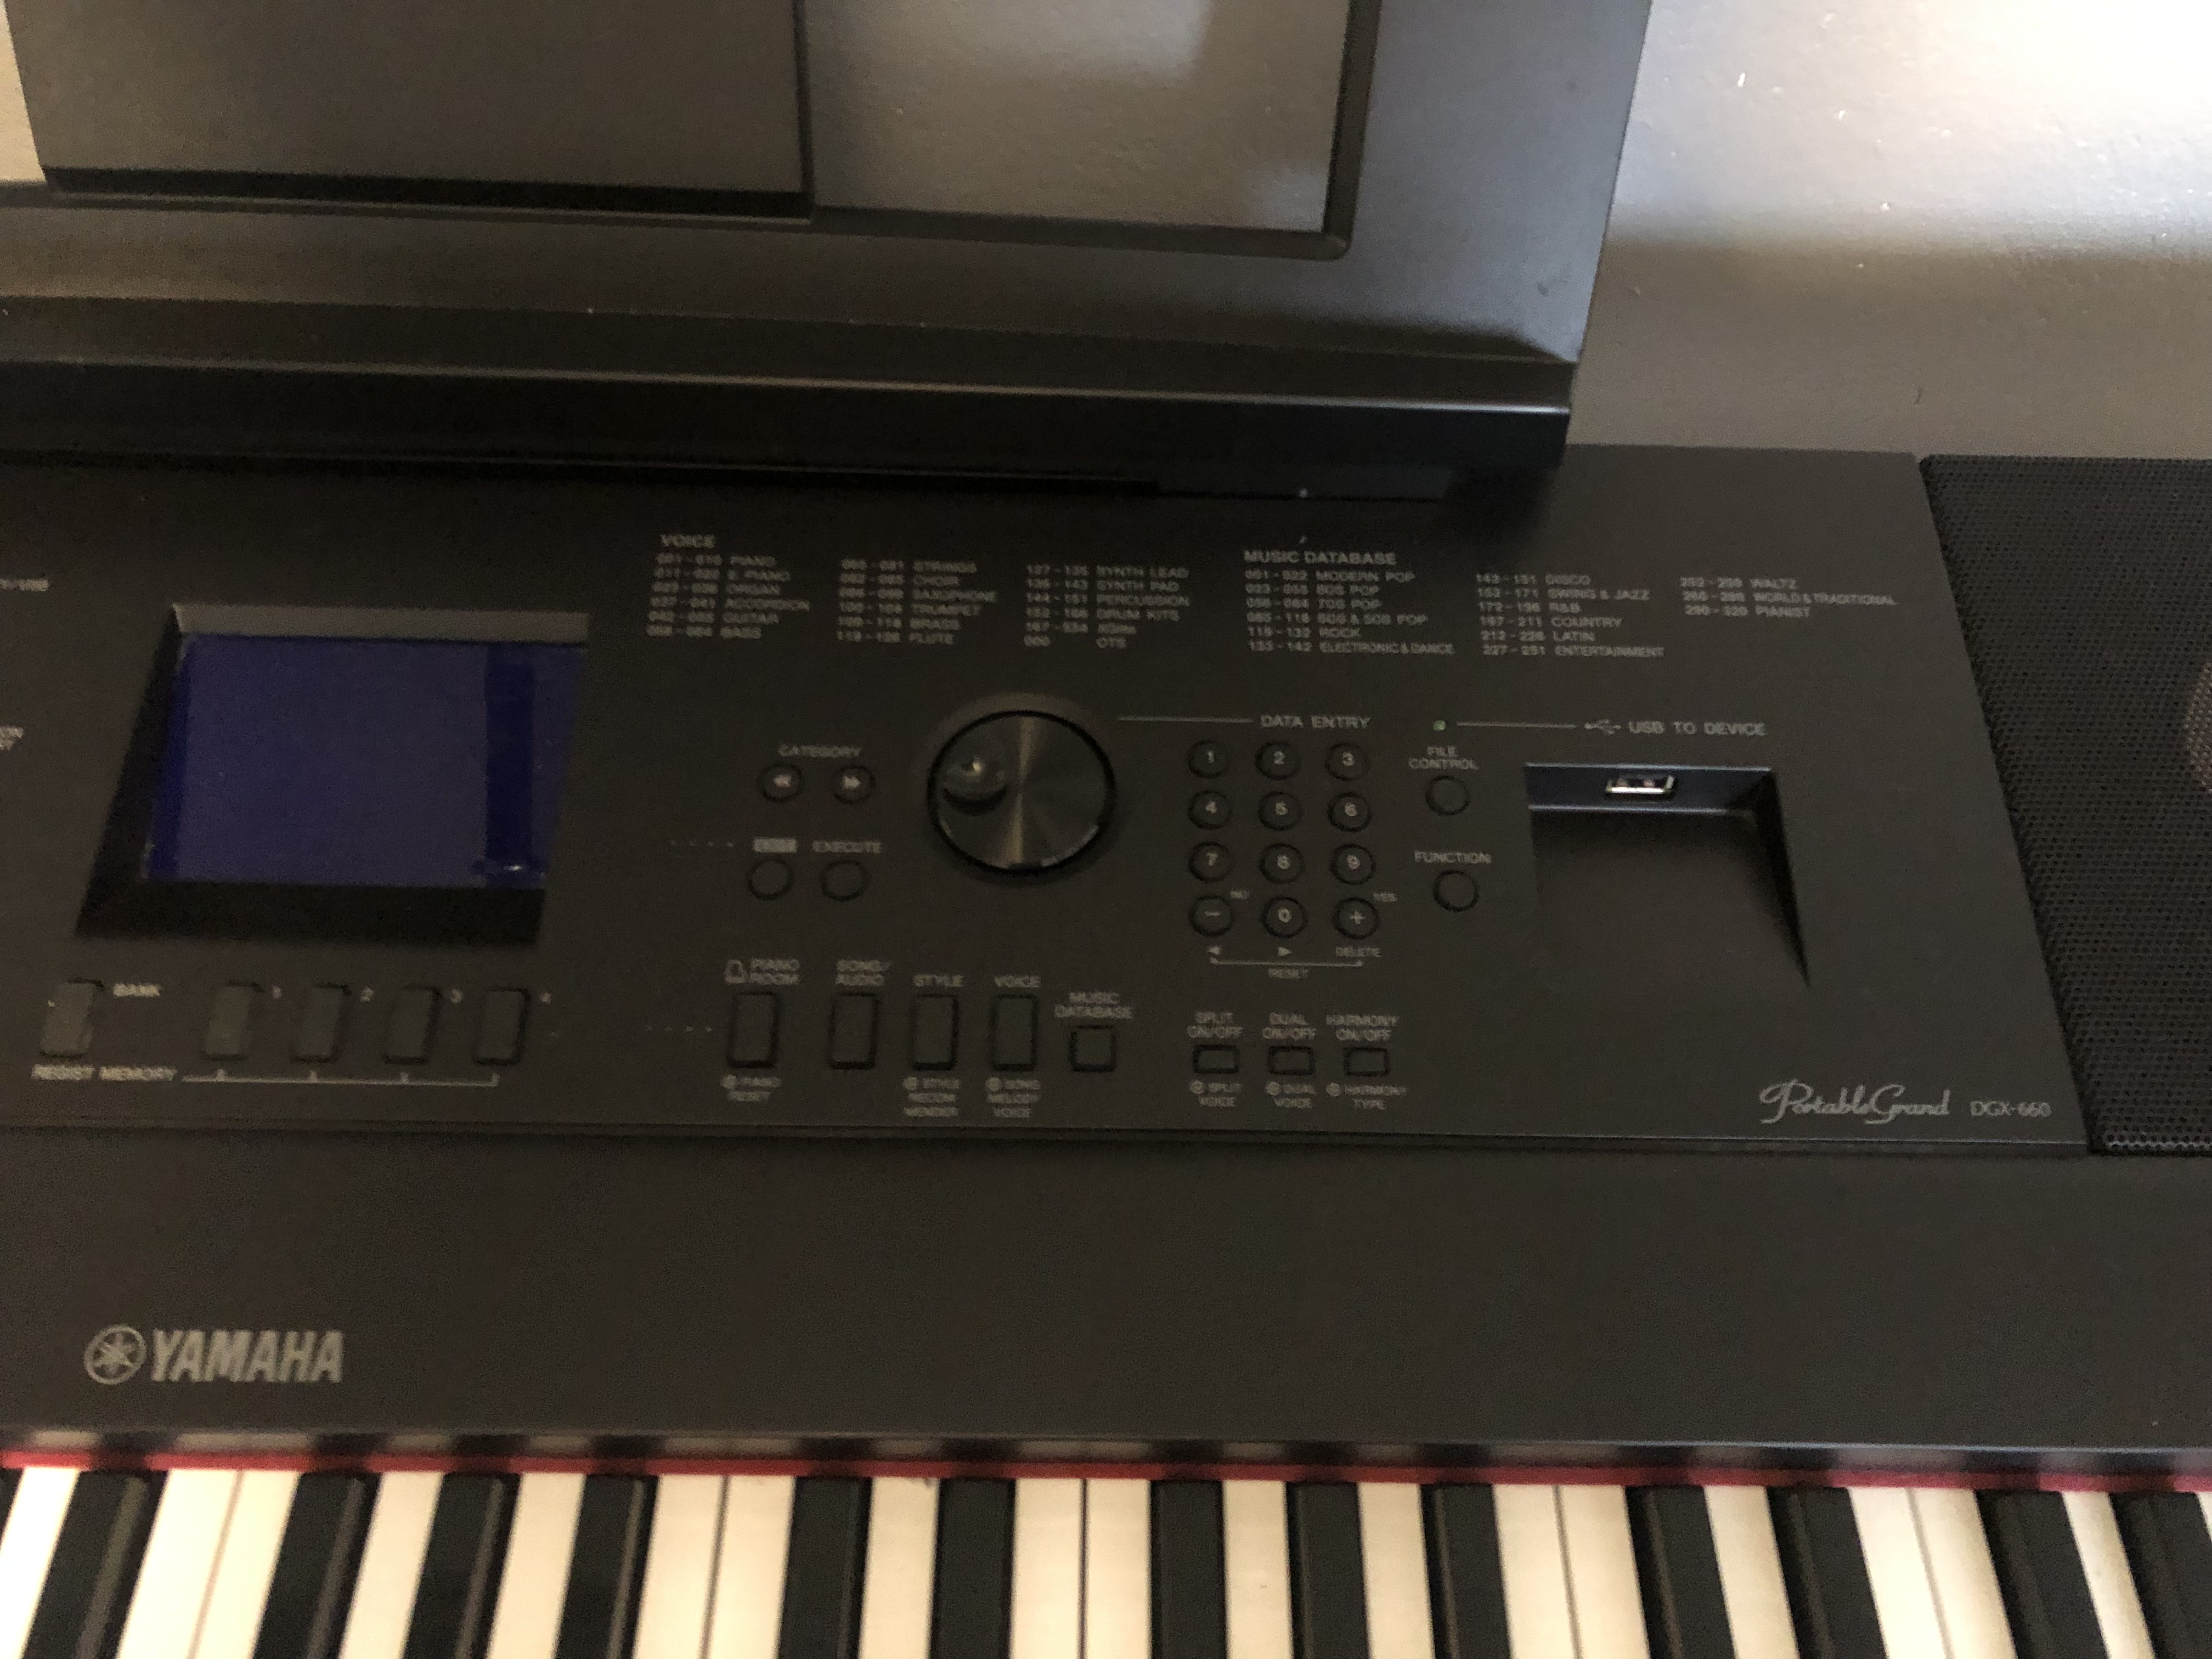 Yamaha – DGX-660B Clavier Numérique 88 Touches – Noir – Gerald Musique